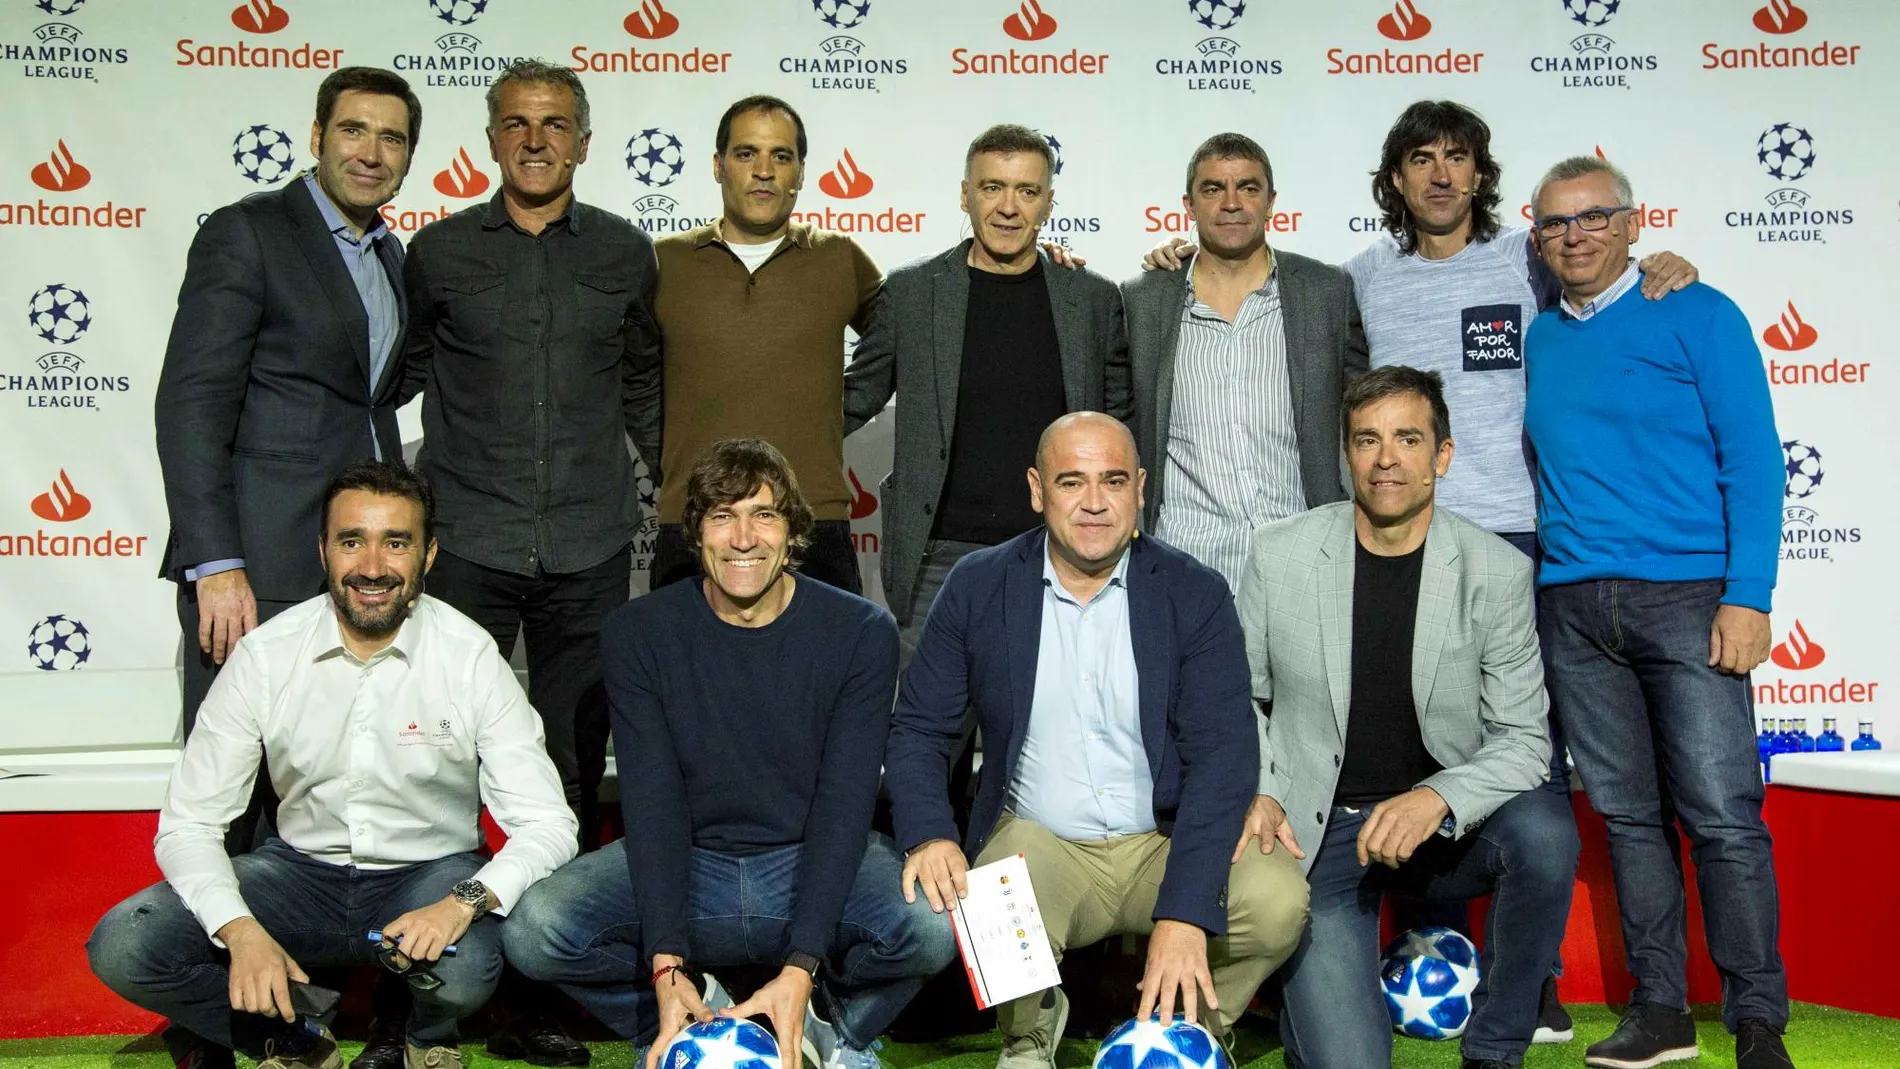 Los ex jugadores posan con periodistas que participaron en el acto / Foto: Santander.